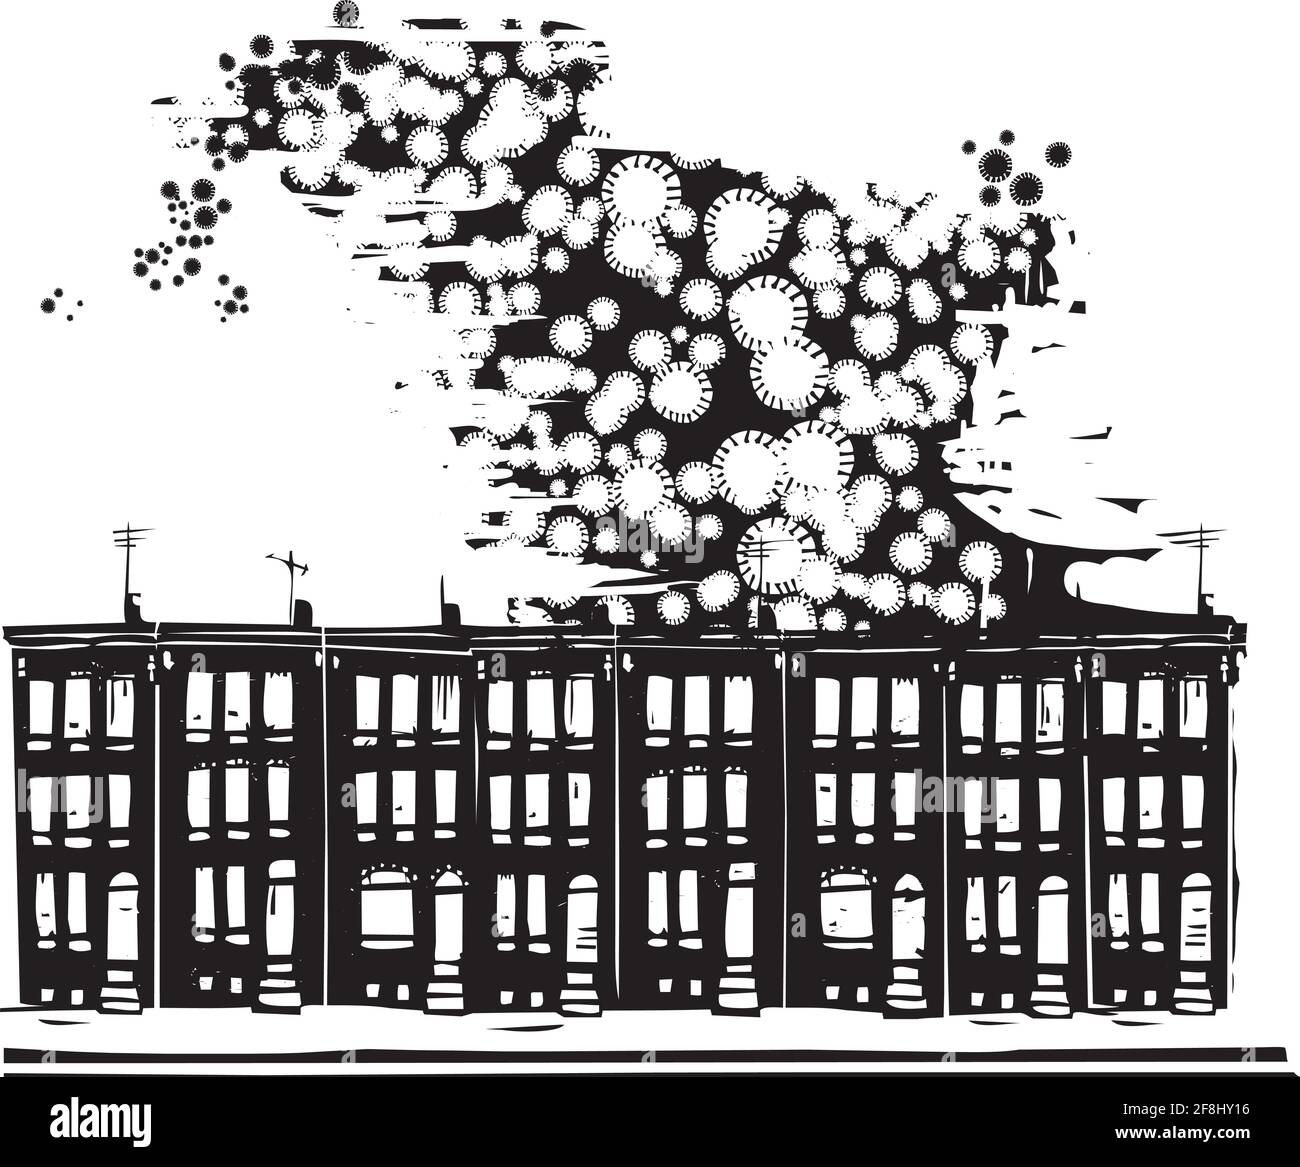 Image de style expressionniste de coupe de bois du virus de covid se propageant dans le centre-ville Illustration de Vecteur